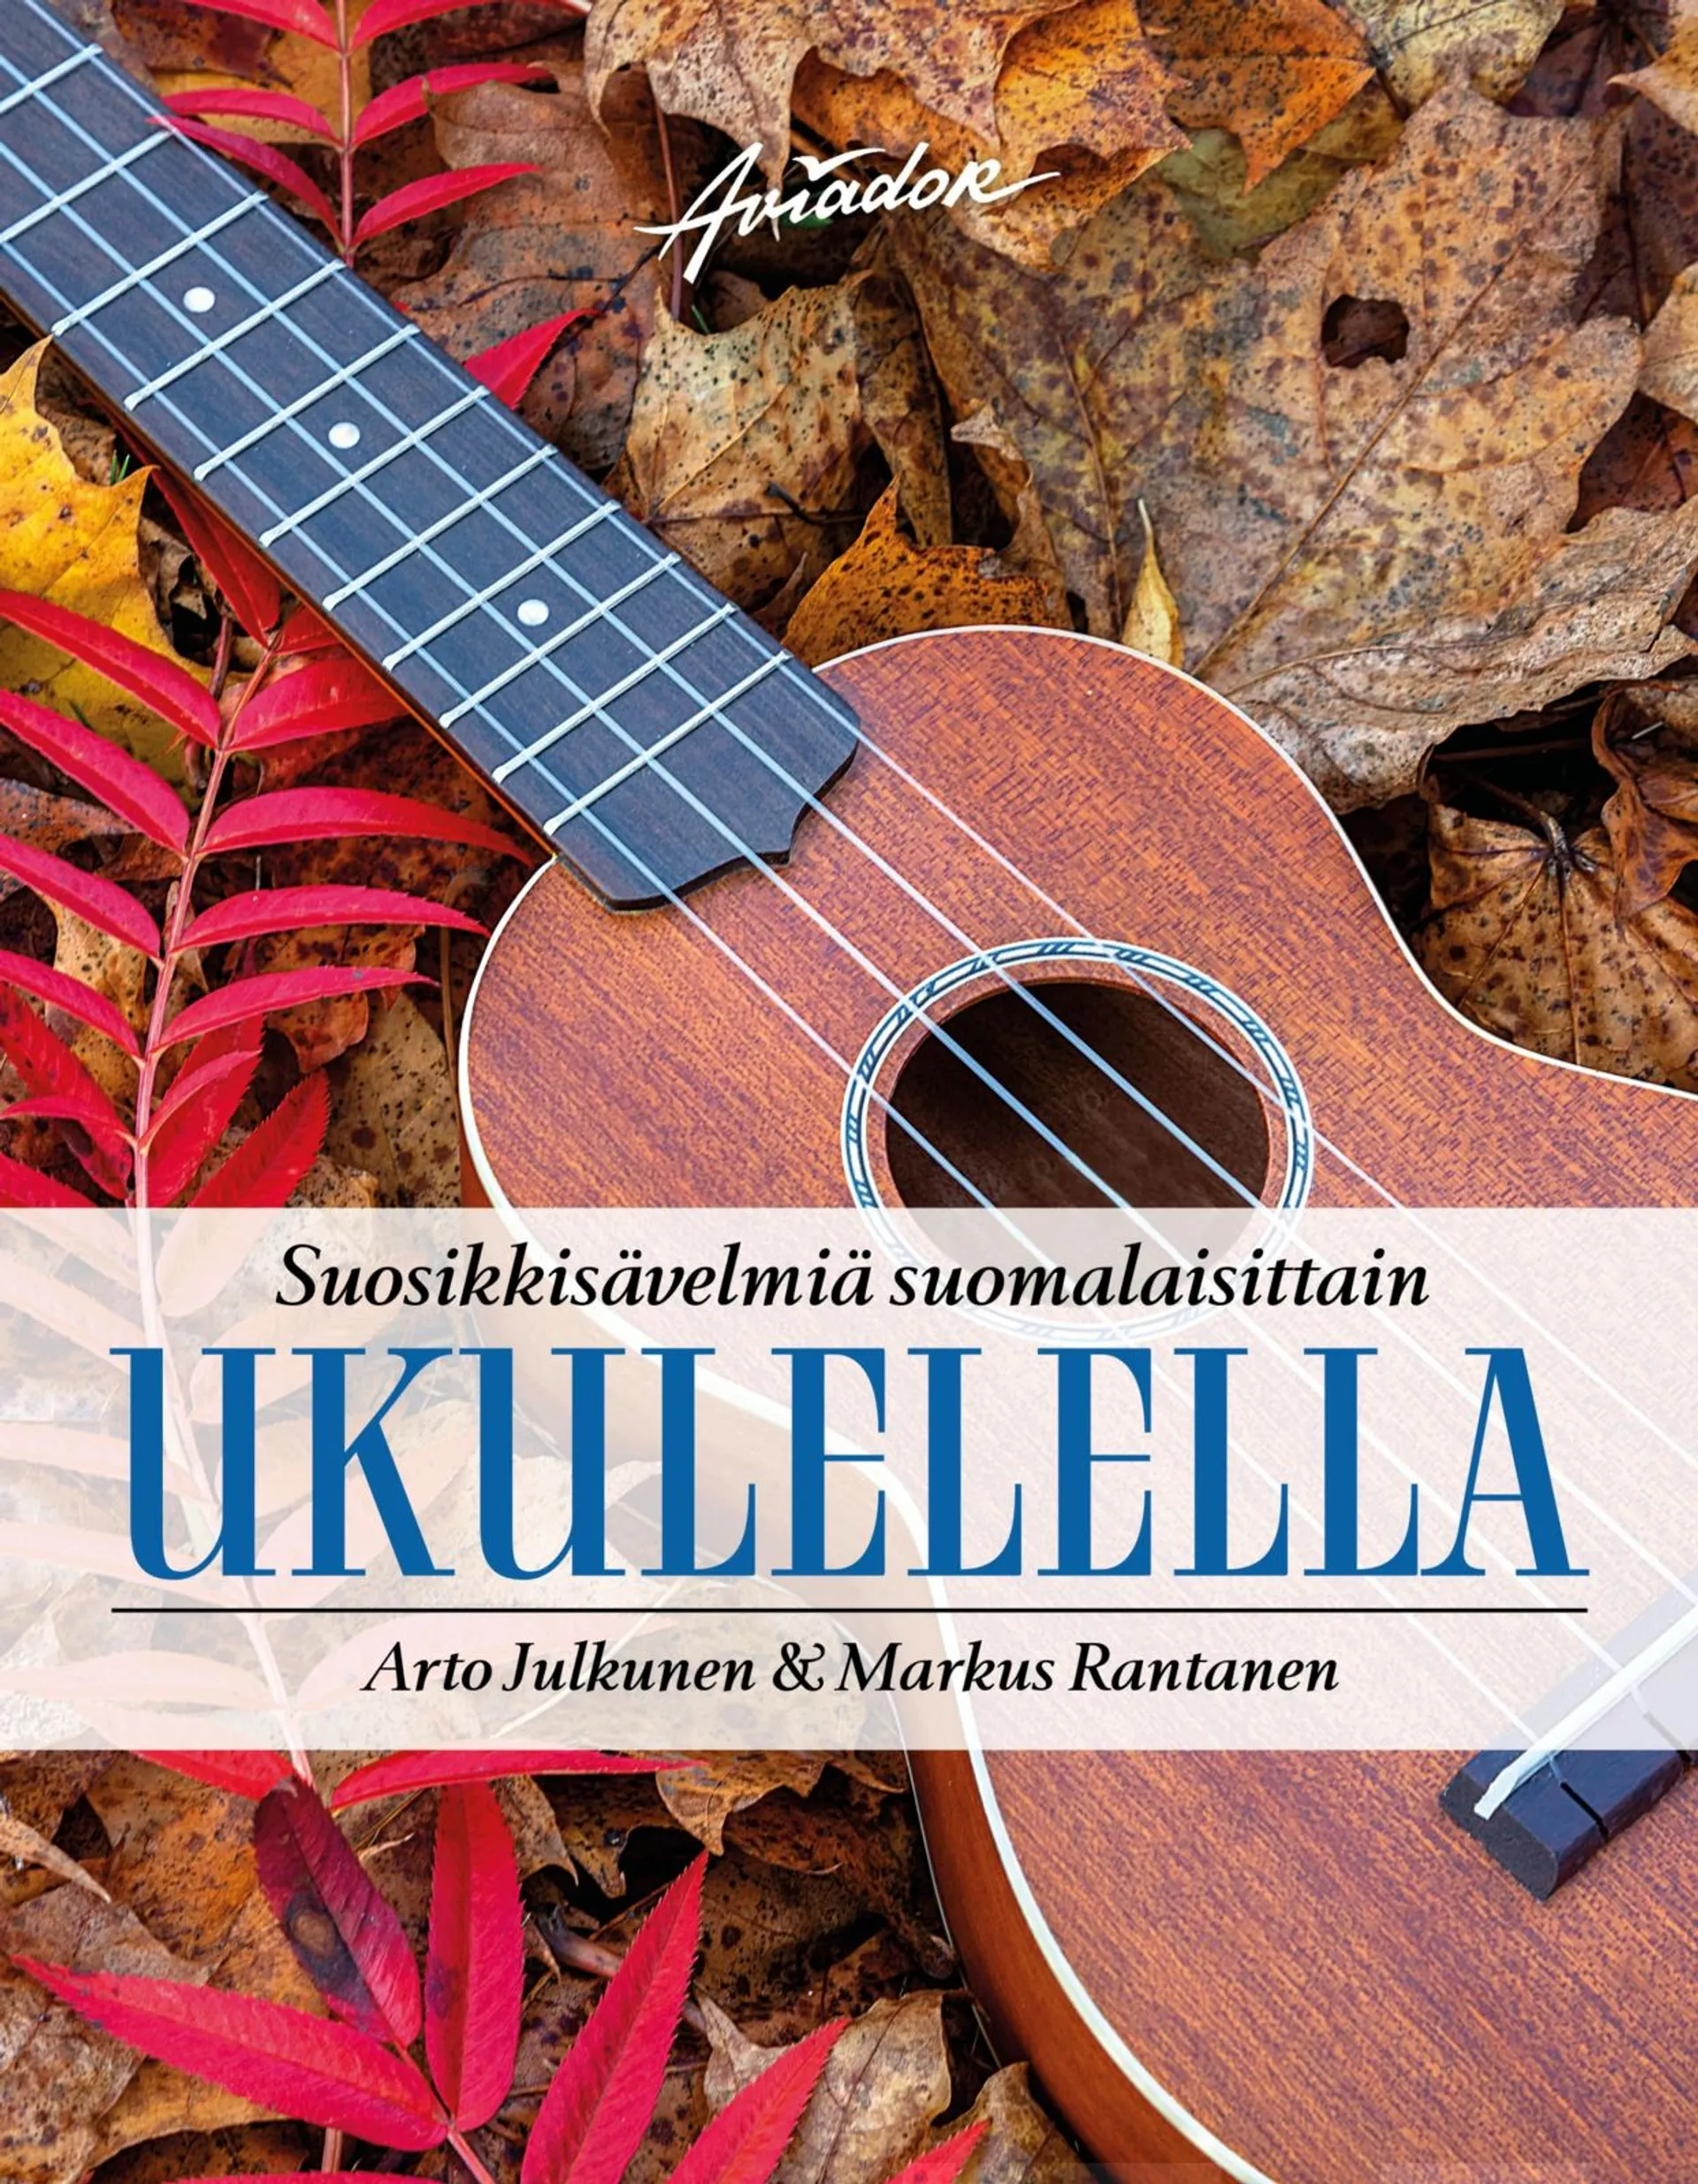 Julkunen, Suosikkisävelmiä suomalaisittain ukulelella